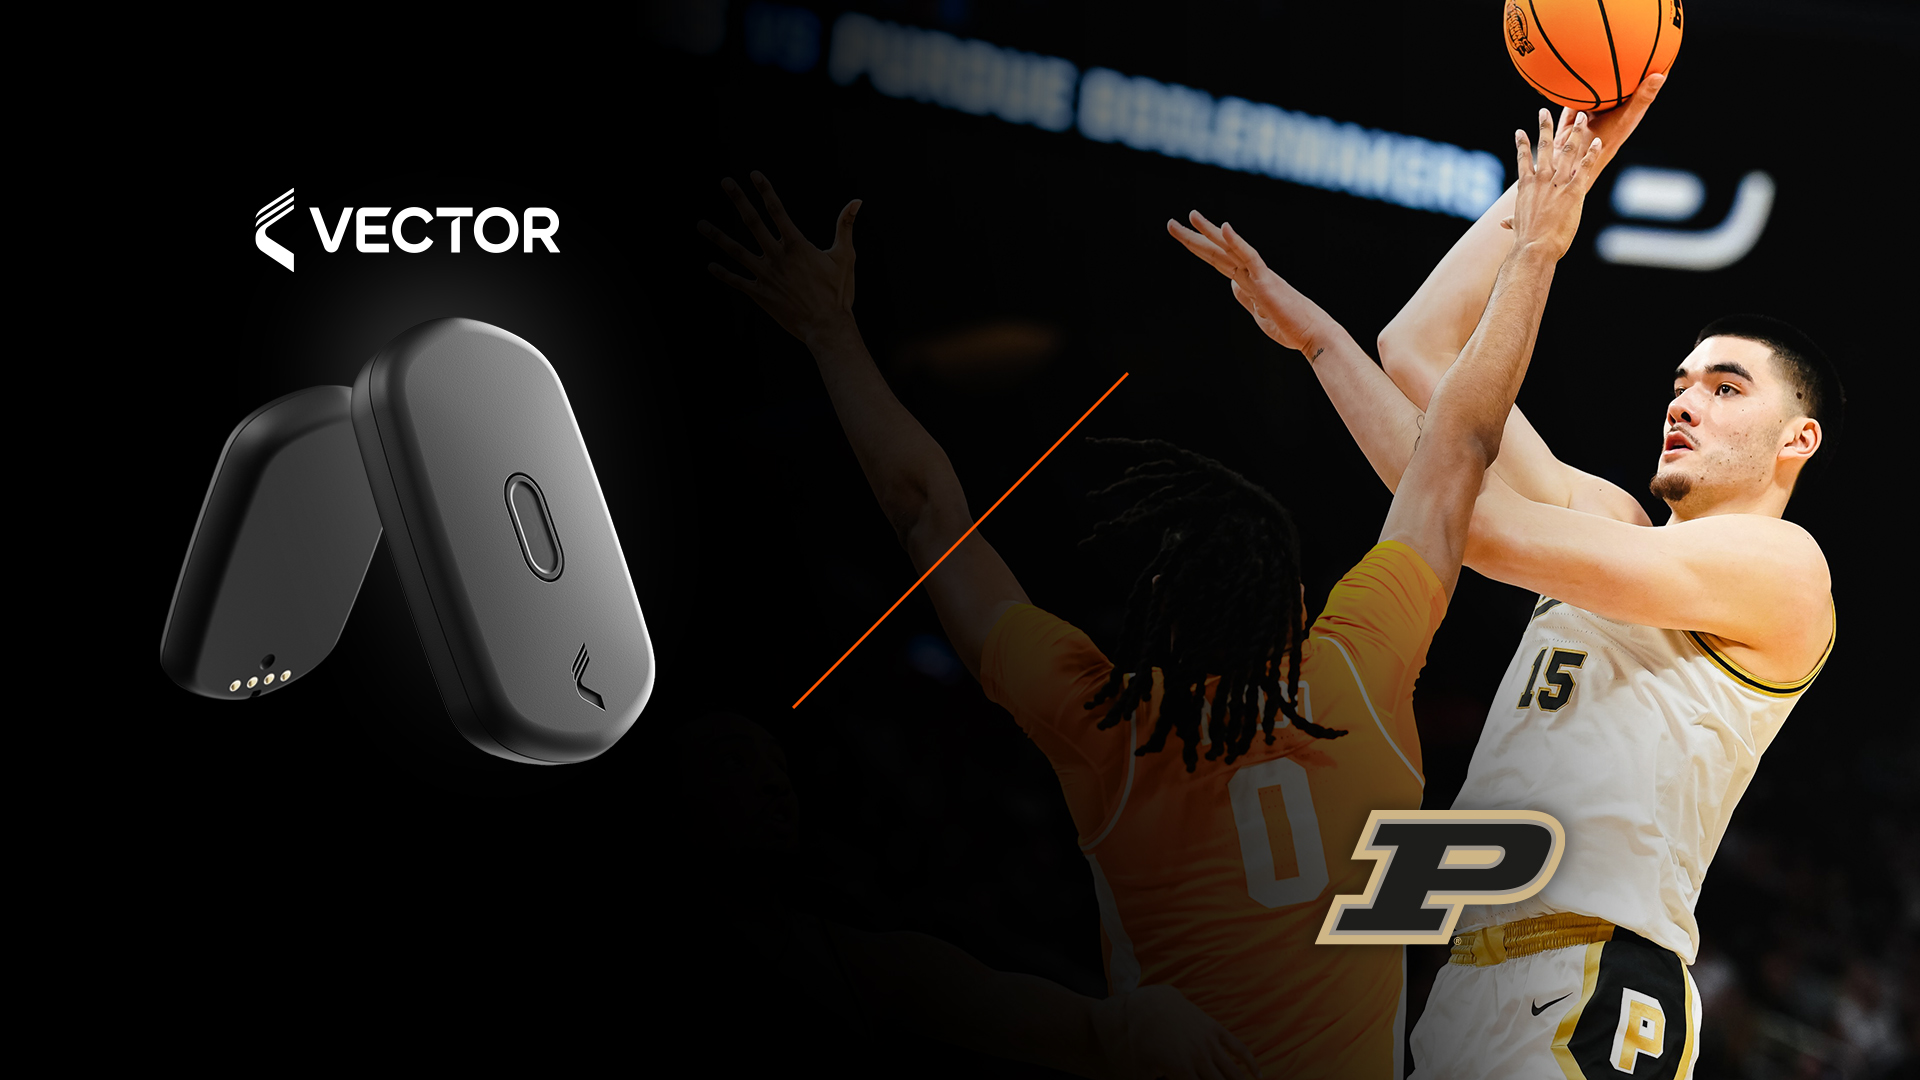 Gráfico promocional de um dispositivo de monitoramento esportivo Vector T7 com um jogador de basquete Purdue em ação, pronto para arremessar a bola.